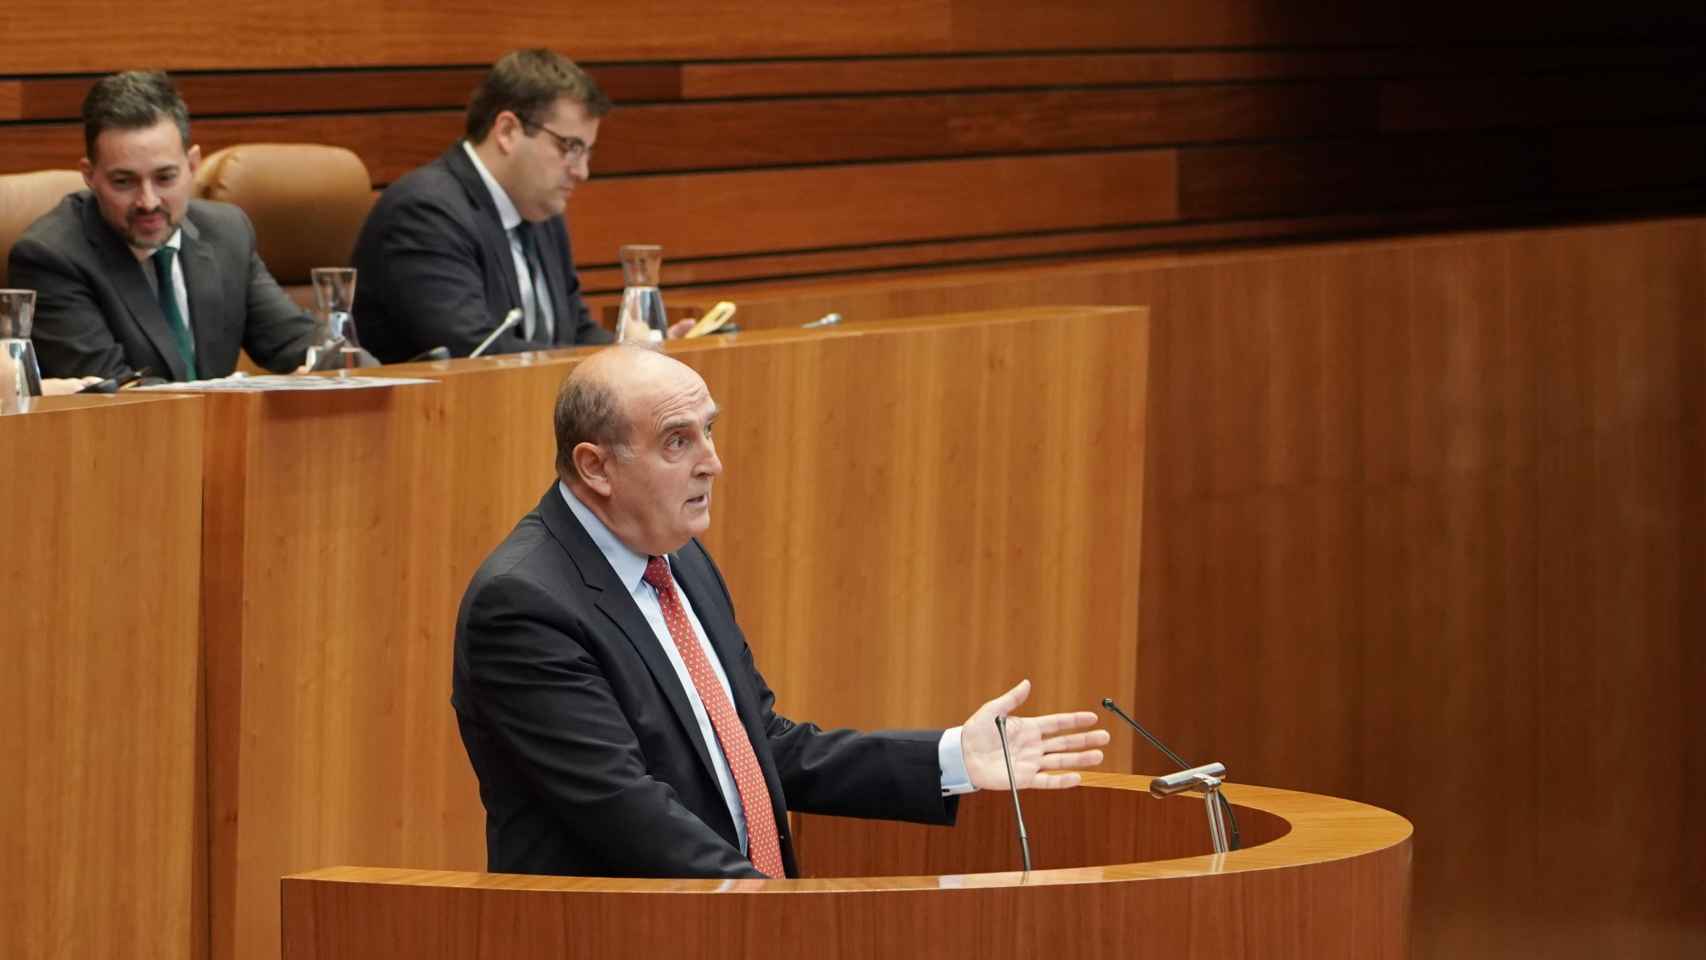 El Procurador del Común, Tomás Quintana, presenta su informe anual en el Pleno de las Cortes